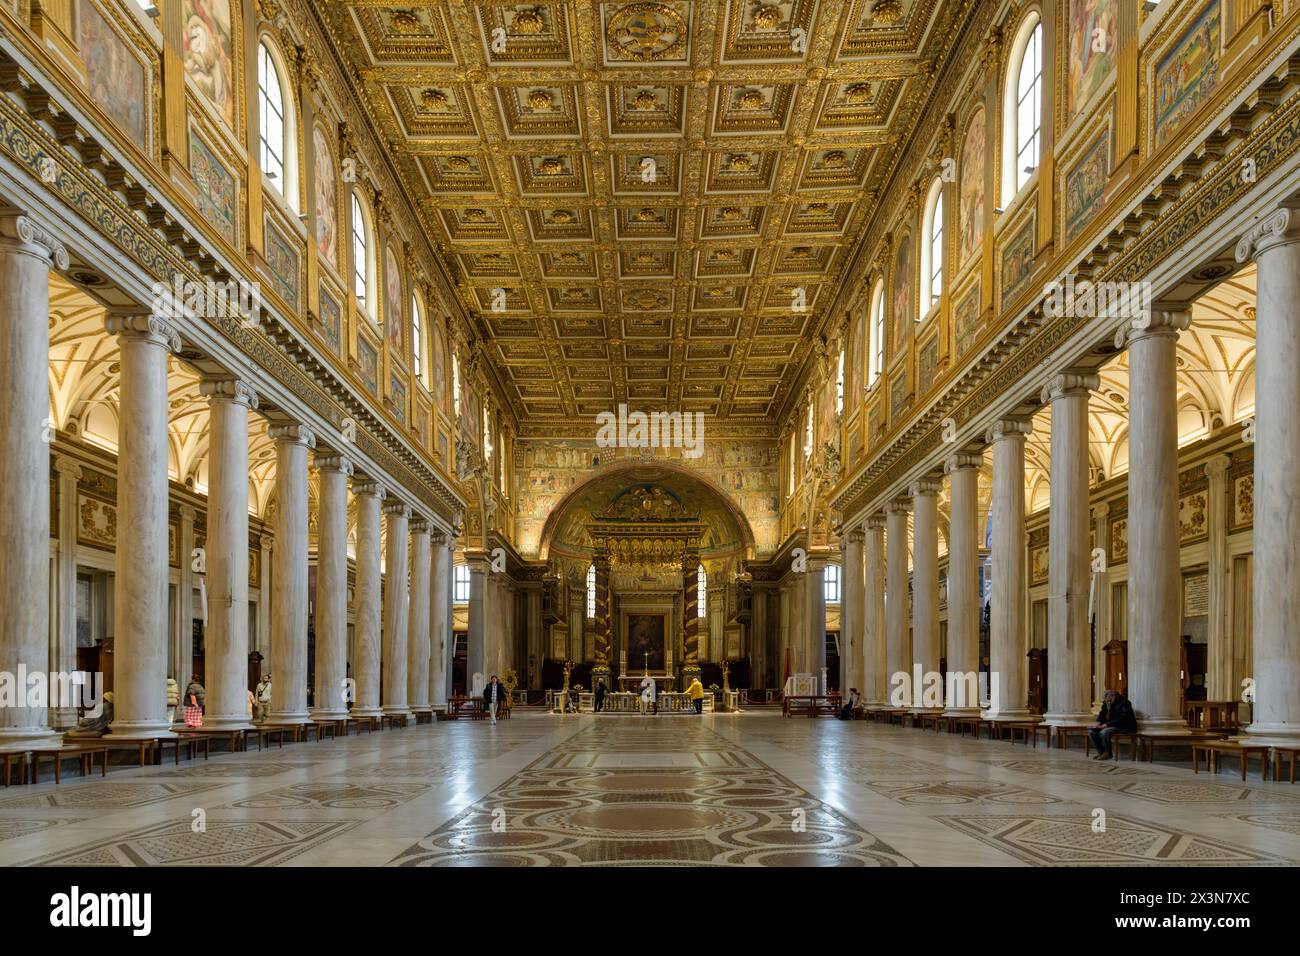 The Basilica of Saint Mary Major (Santa Maria Maggiore). Major papal basilica. Rome, Italy Stock Photo